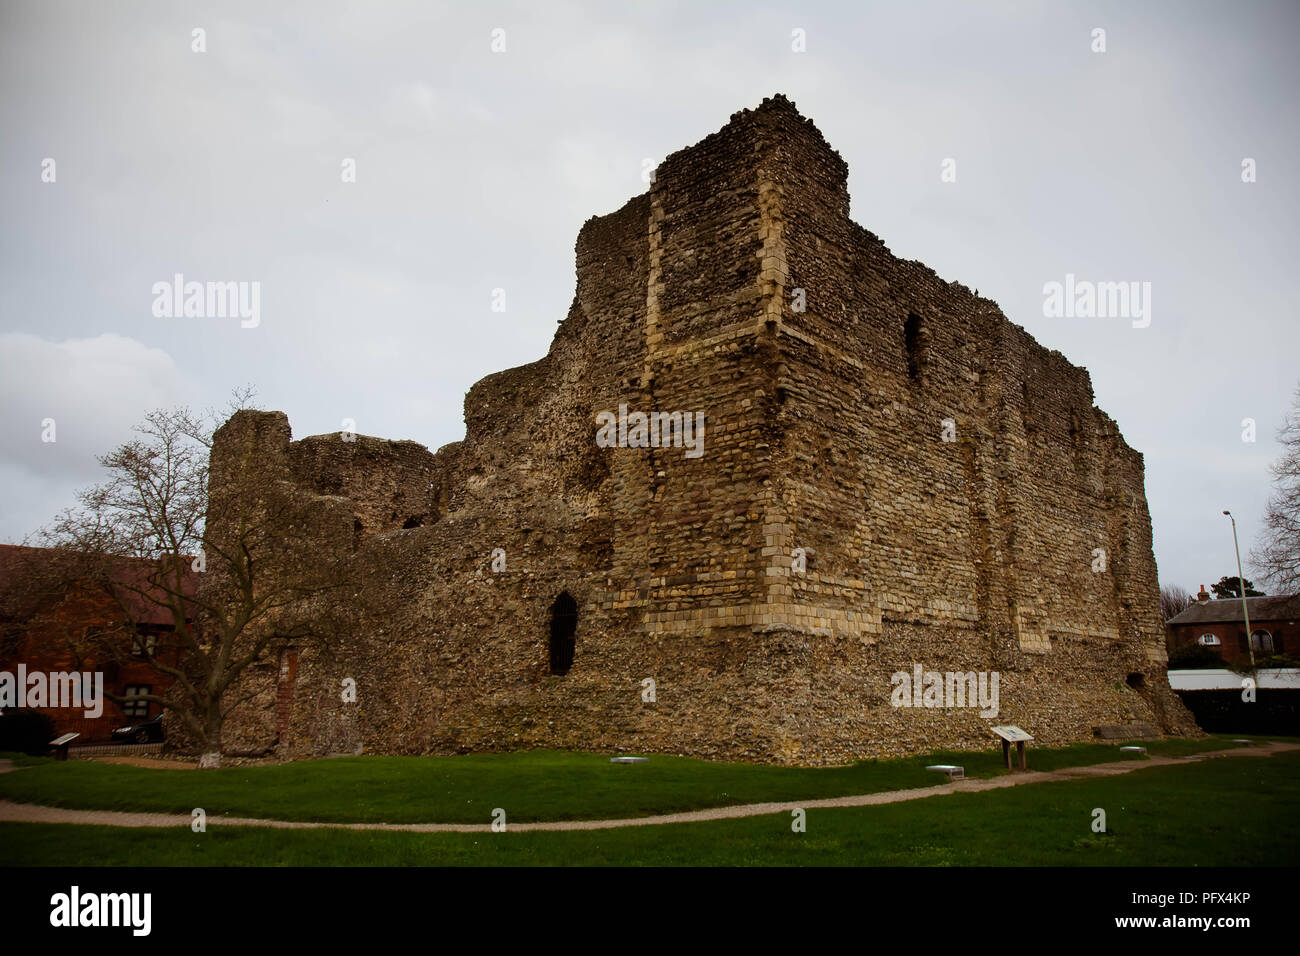 Dicembre 2015 - rovine del castello di Canterbury, Kent, Regno Unito; uno dei primi castelli fondata da William il Conquistatore dopo l'invasione in Inghilterra nel 1066 Foto Stock